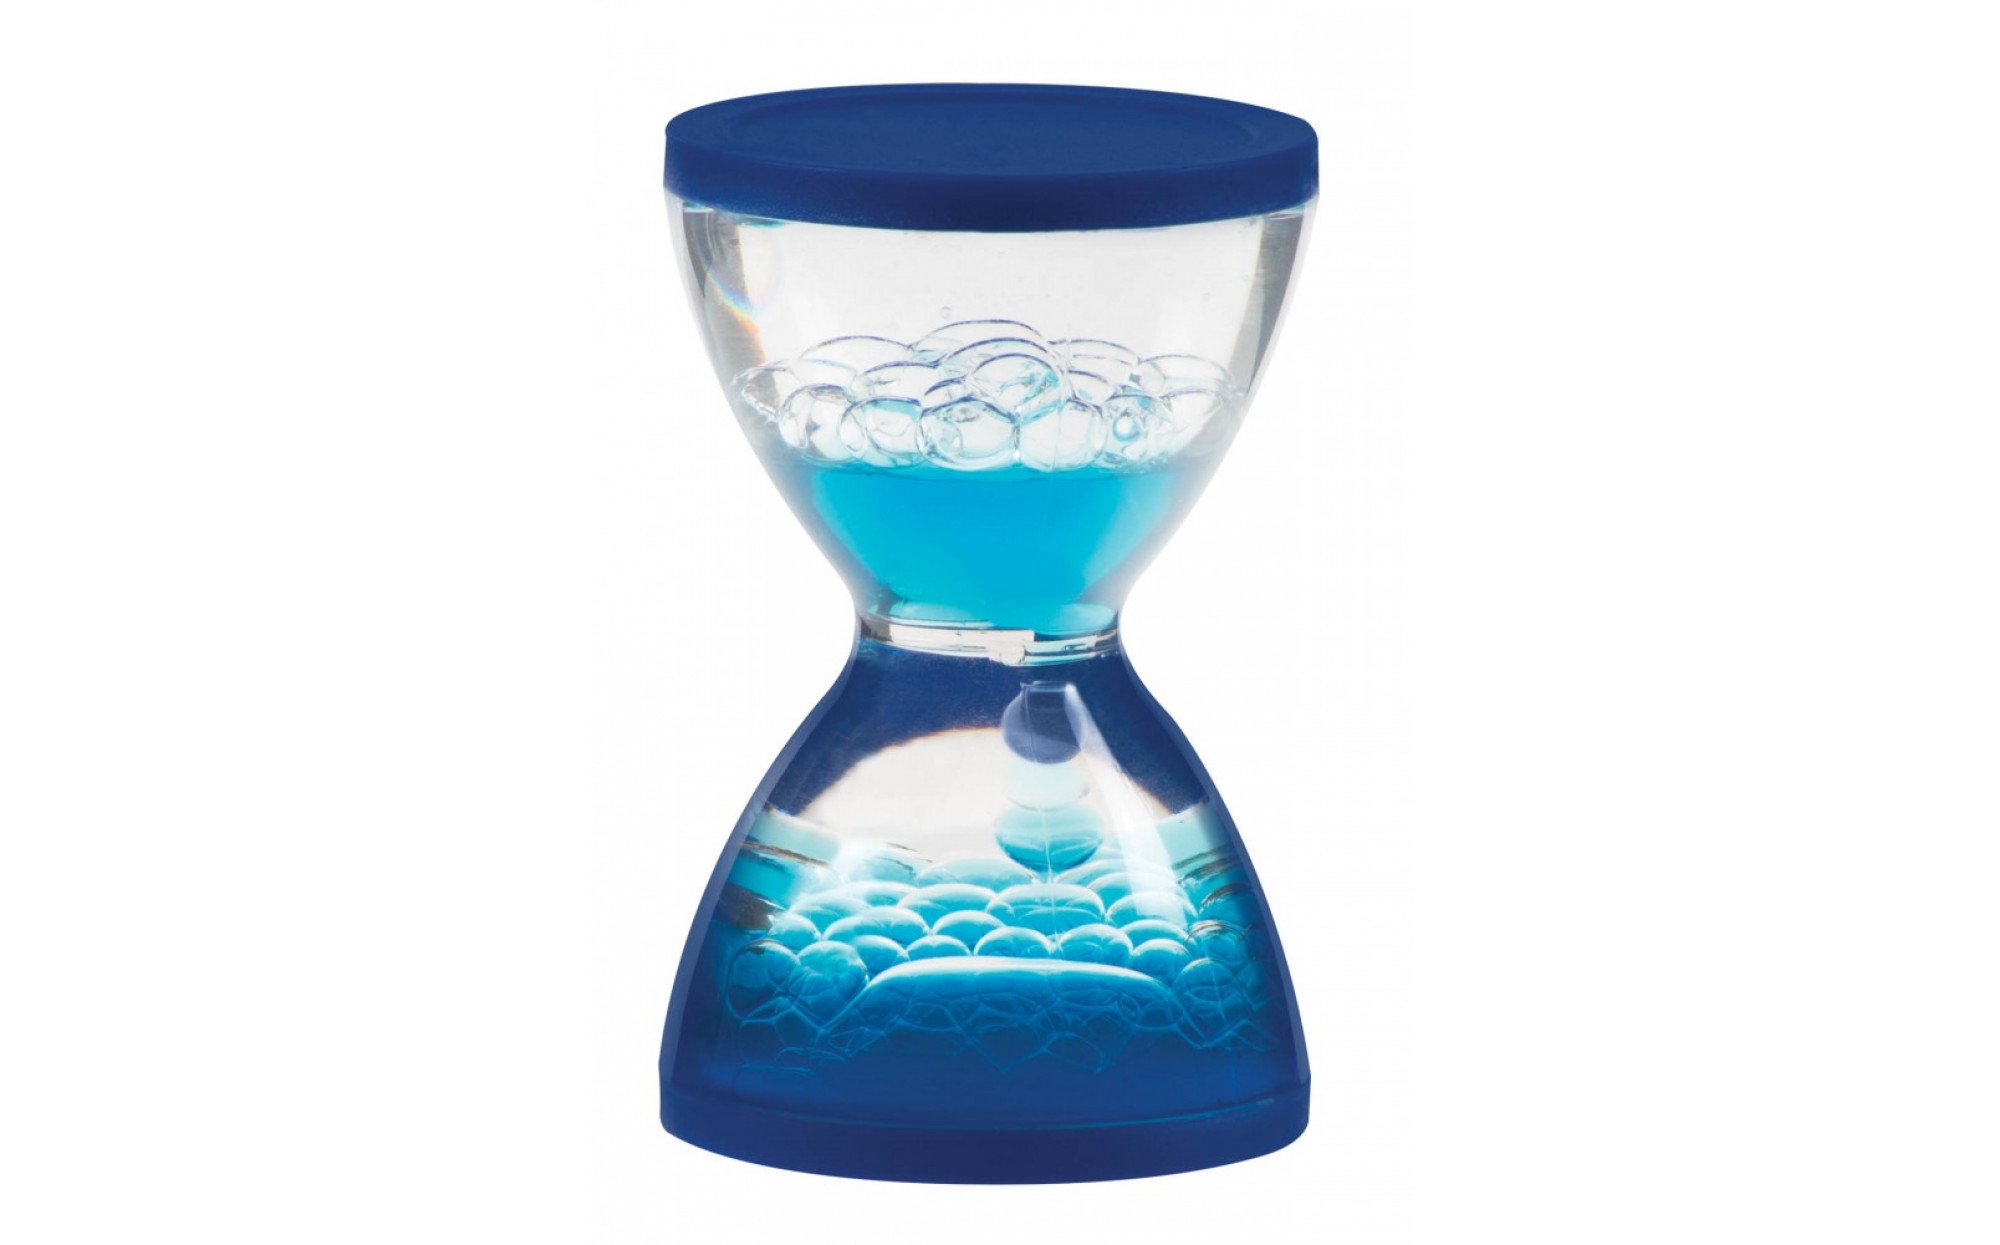 Современные водяные часы